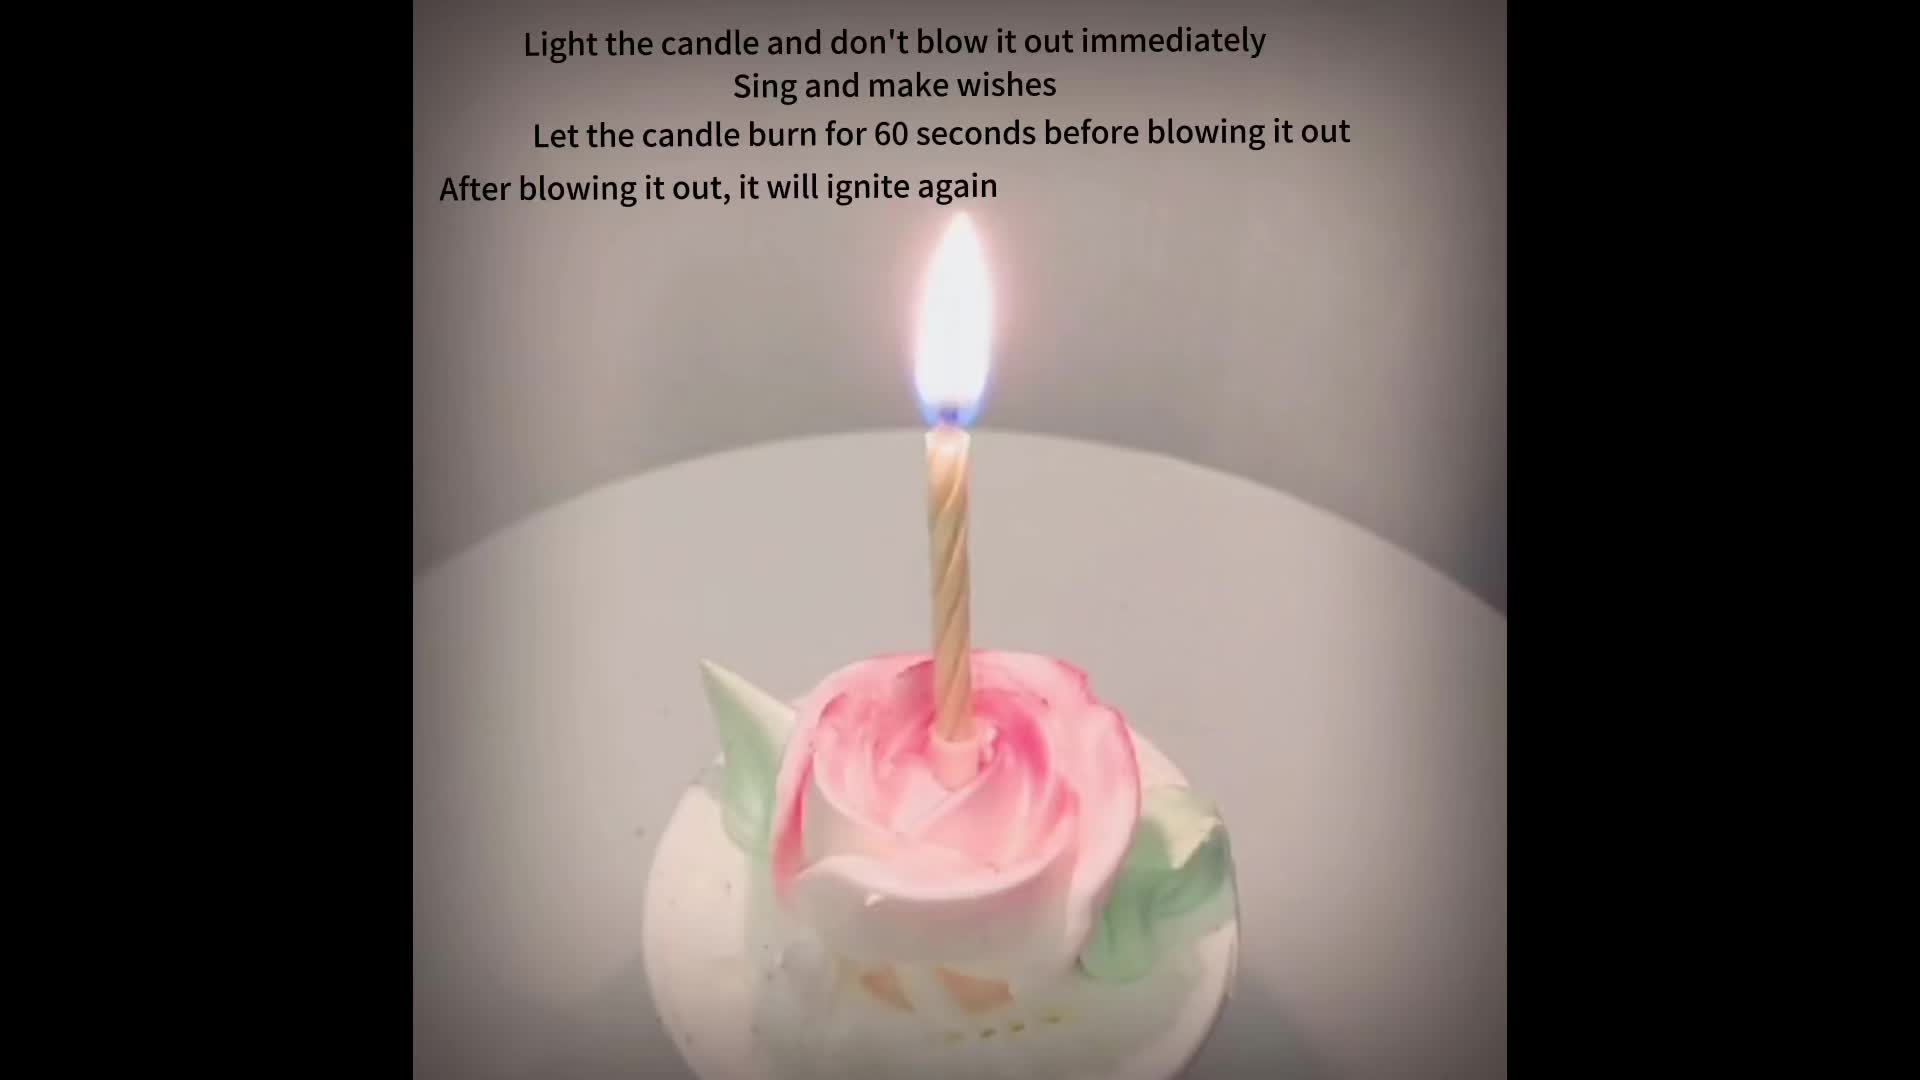 12 velas que no se apagan de cumpleaños vela mágica de colores para tarta -  TodoMasBarato